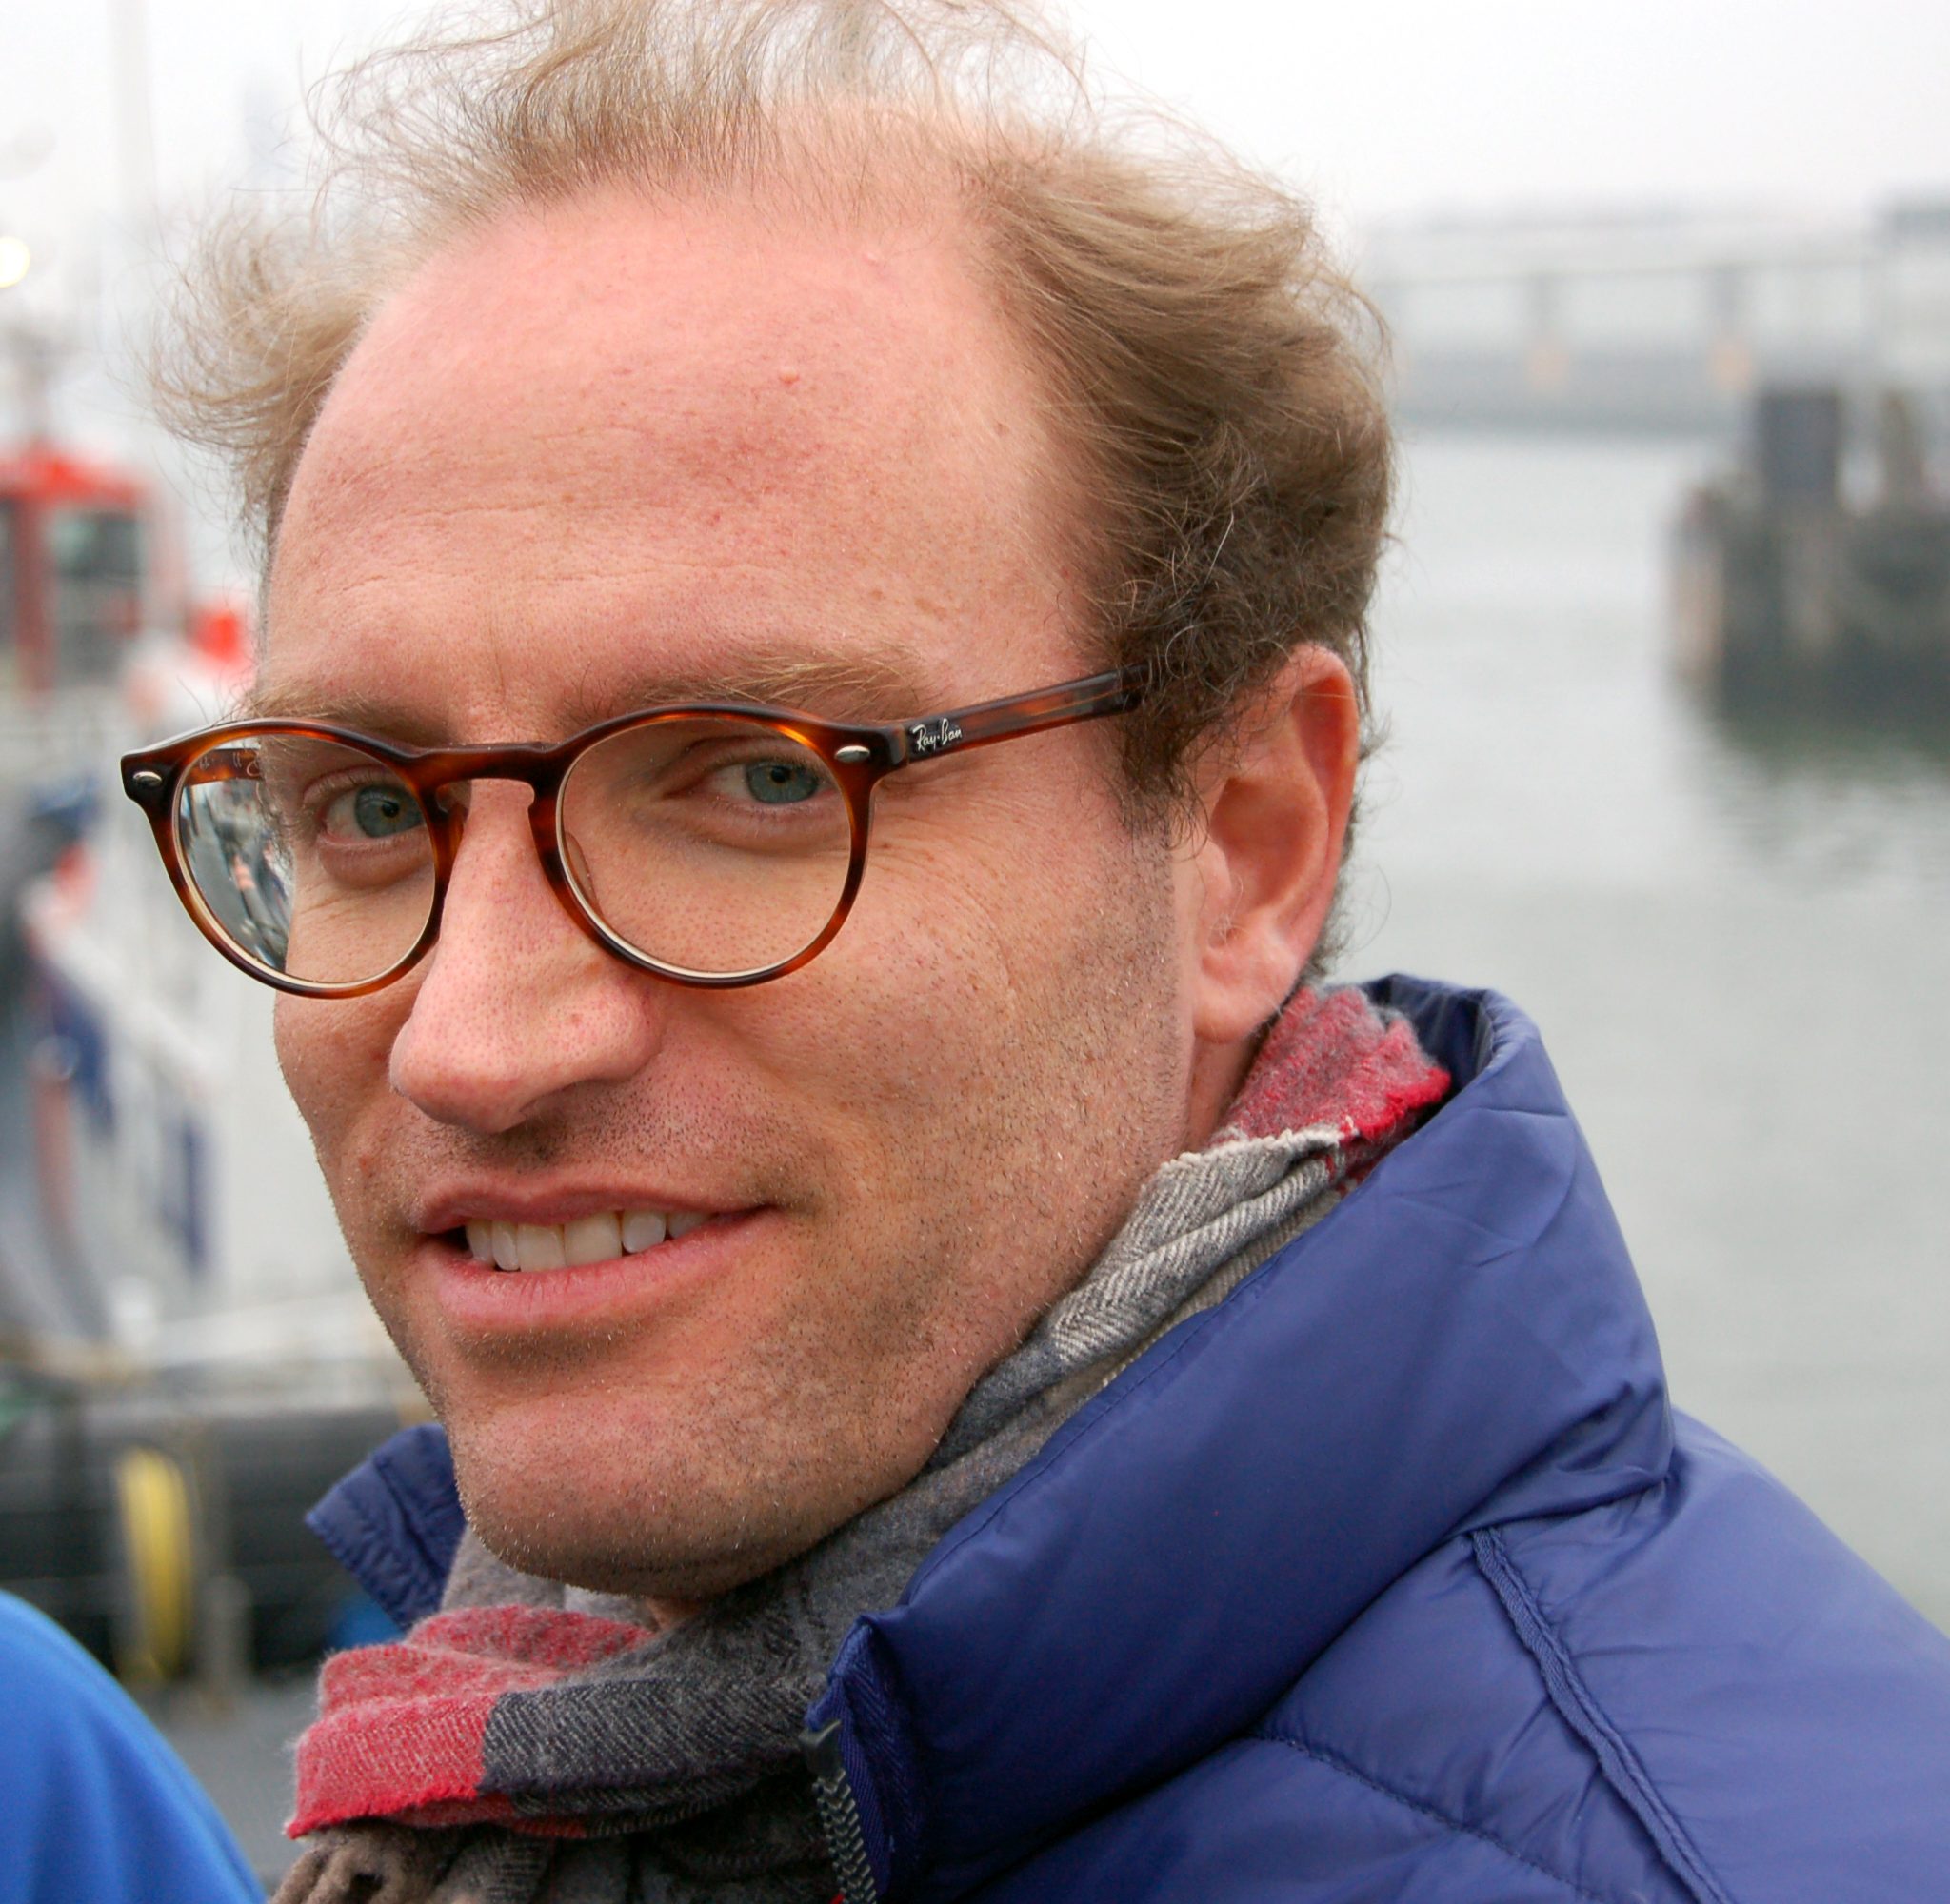 RMD-arts Fulco van der Leer (46): ‘De regels kunnen zelfs per haven verschillen. Heel frustrerend. Soms lukt het pas na twee of drie keer.’ (Archieffoto KNRM)